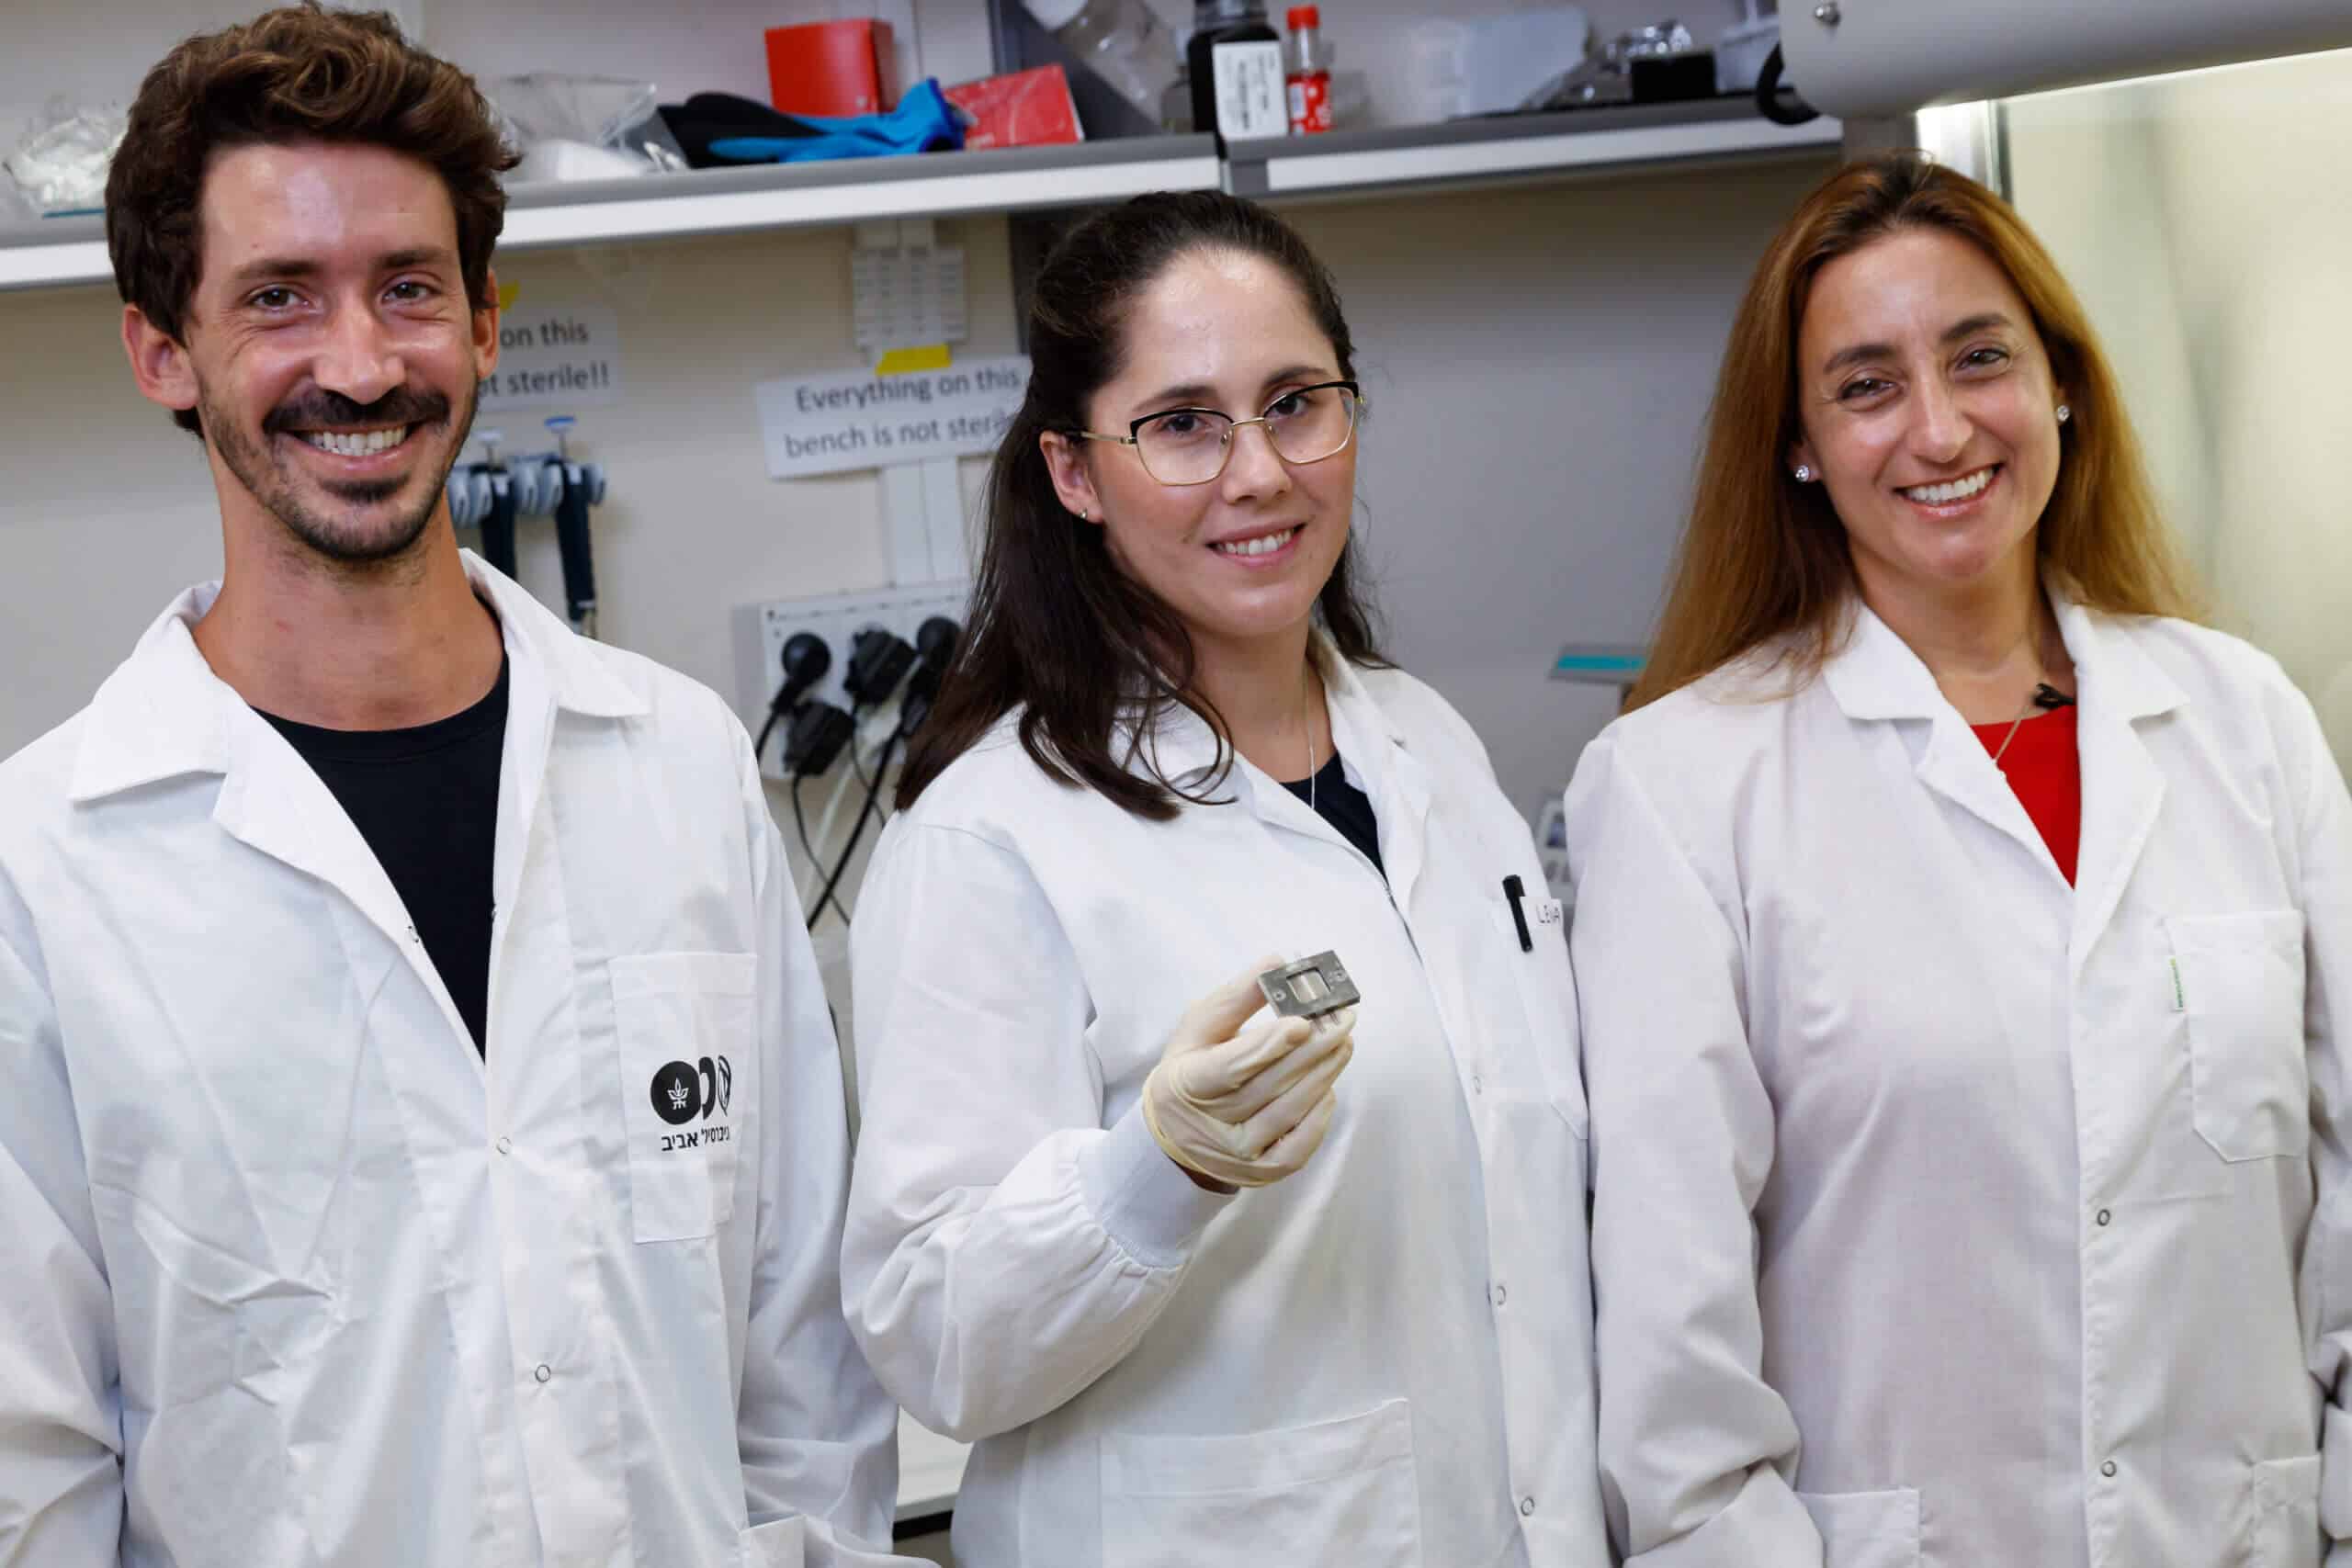 צוות המחקר (מימין לשמאל): רונית סצ'י פאינרו, לנה נויפלד, עילם עייני. צילום: דוברות אוניברסיטת תל אביב